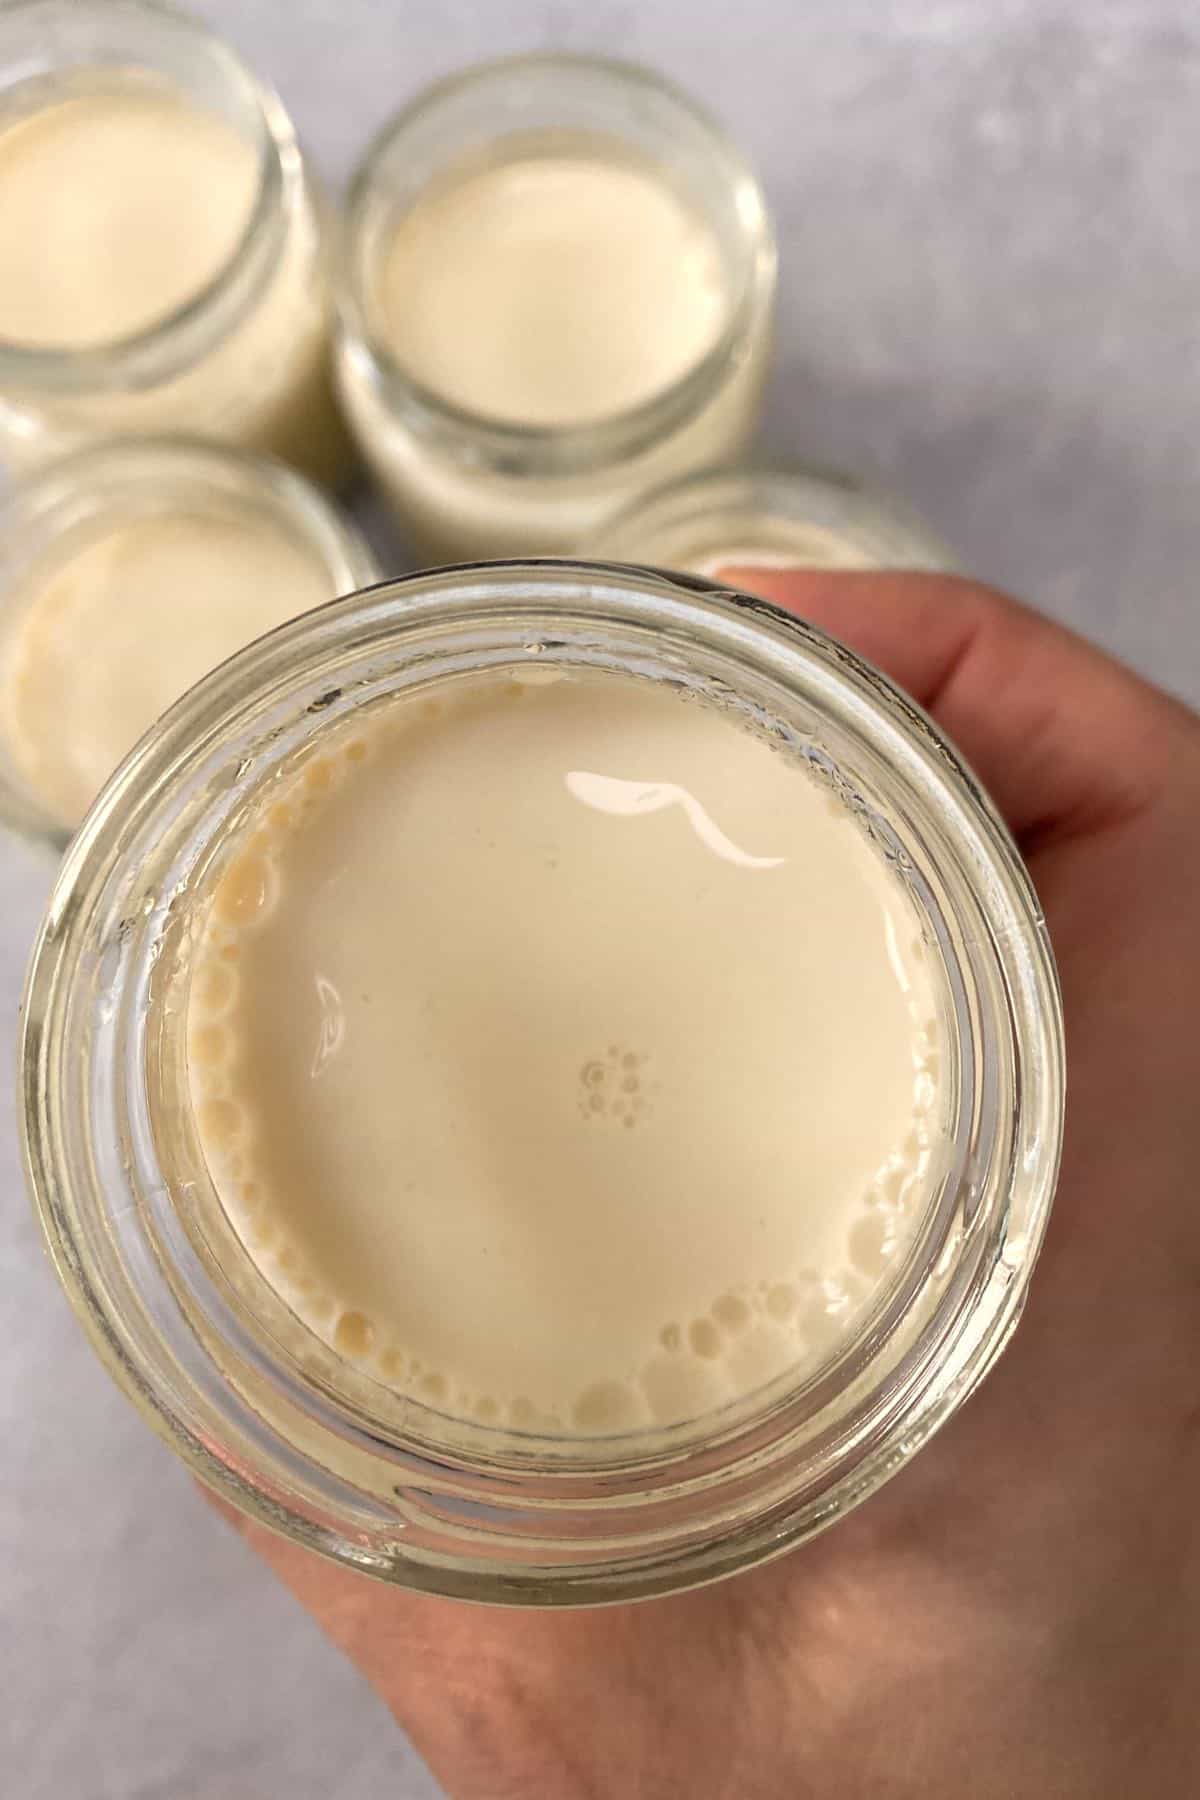 A jar with soy milk yogurt